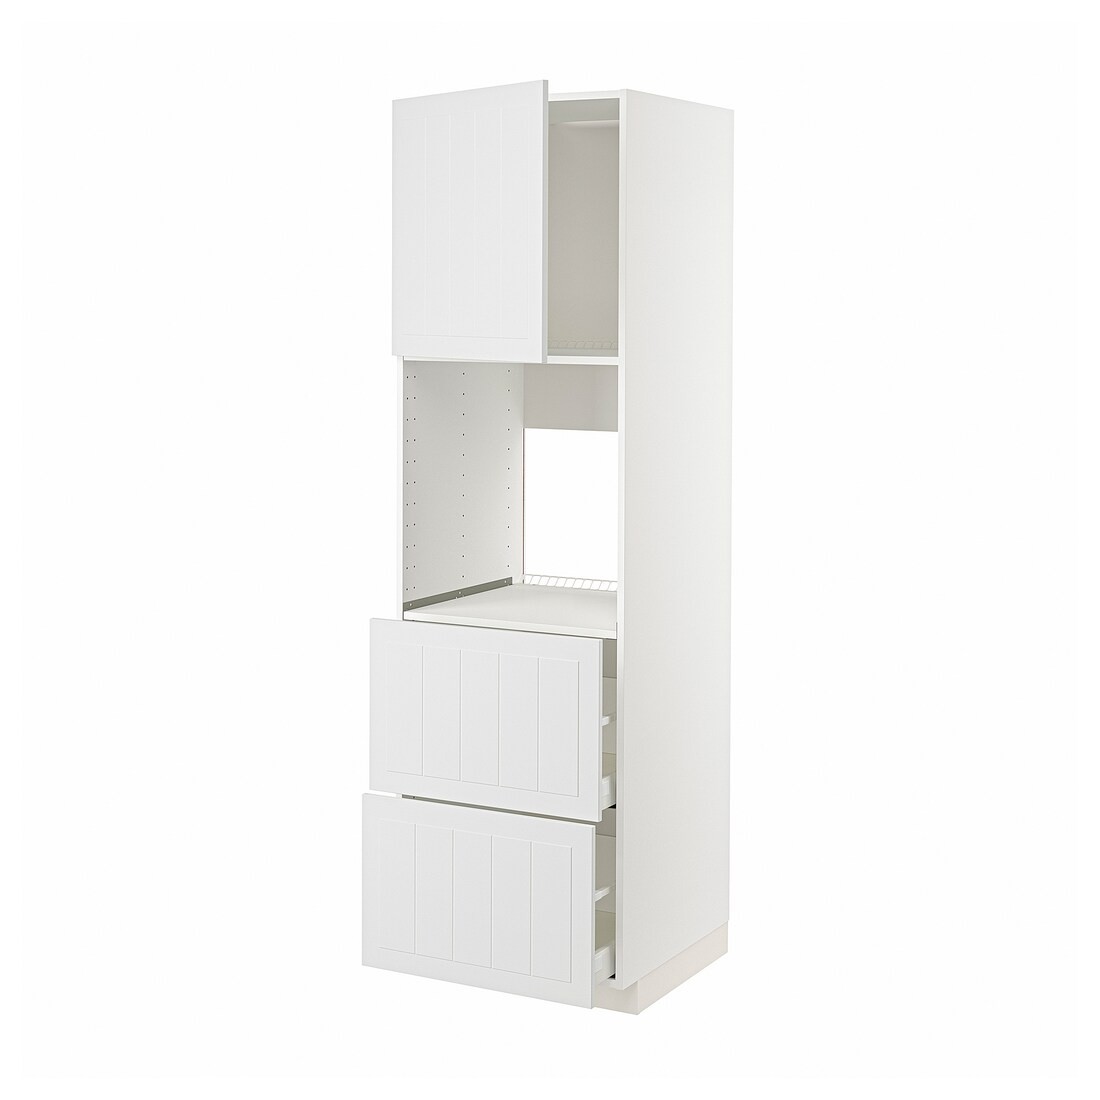 IKEA METOD МЕТОД / MAXIMERA МАКСИМЕРА Высокий шкаф для духовки с дверцей / ящиками, белый / Stensund белый, 60x60x200 см 19470171 | 194.701.71